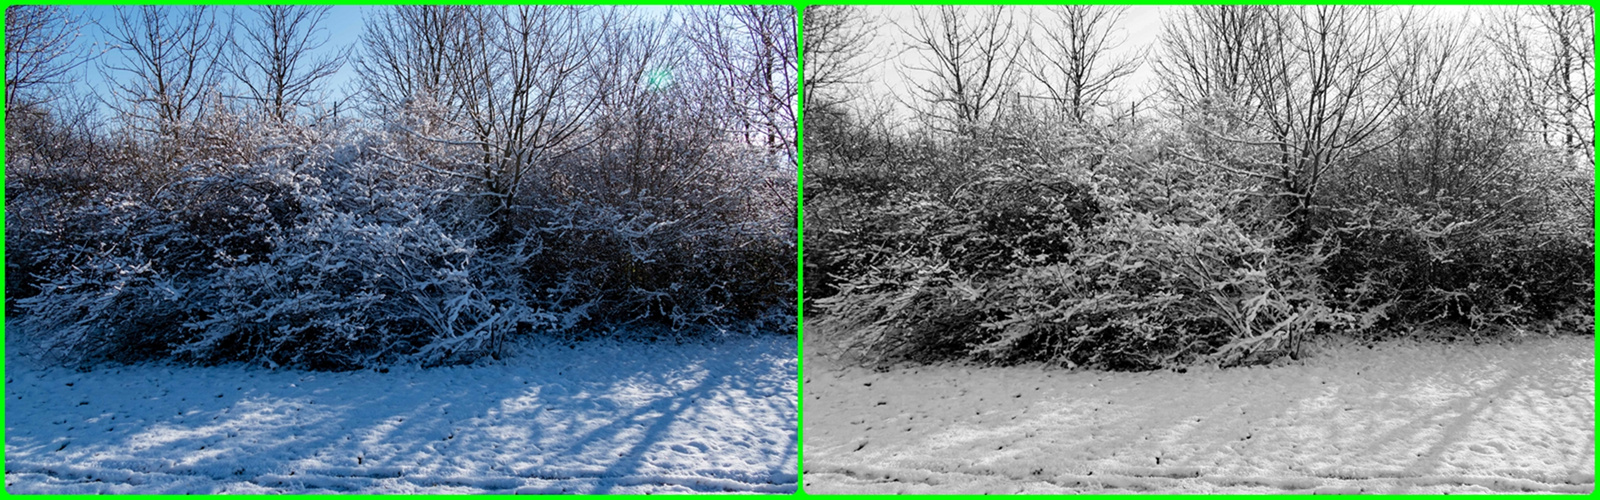 Winterlandschaft-farblich und schwarz-weiß